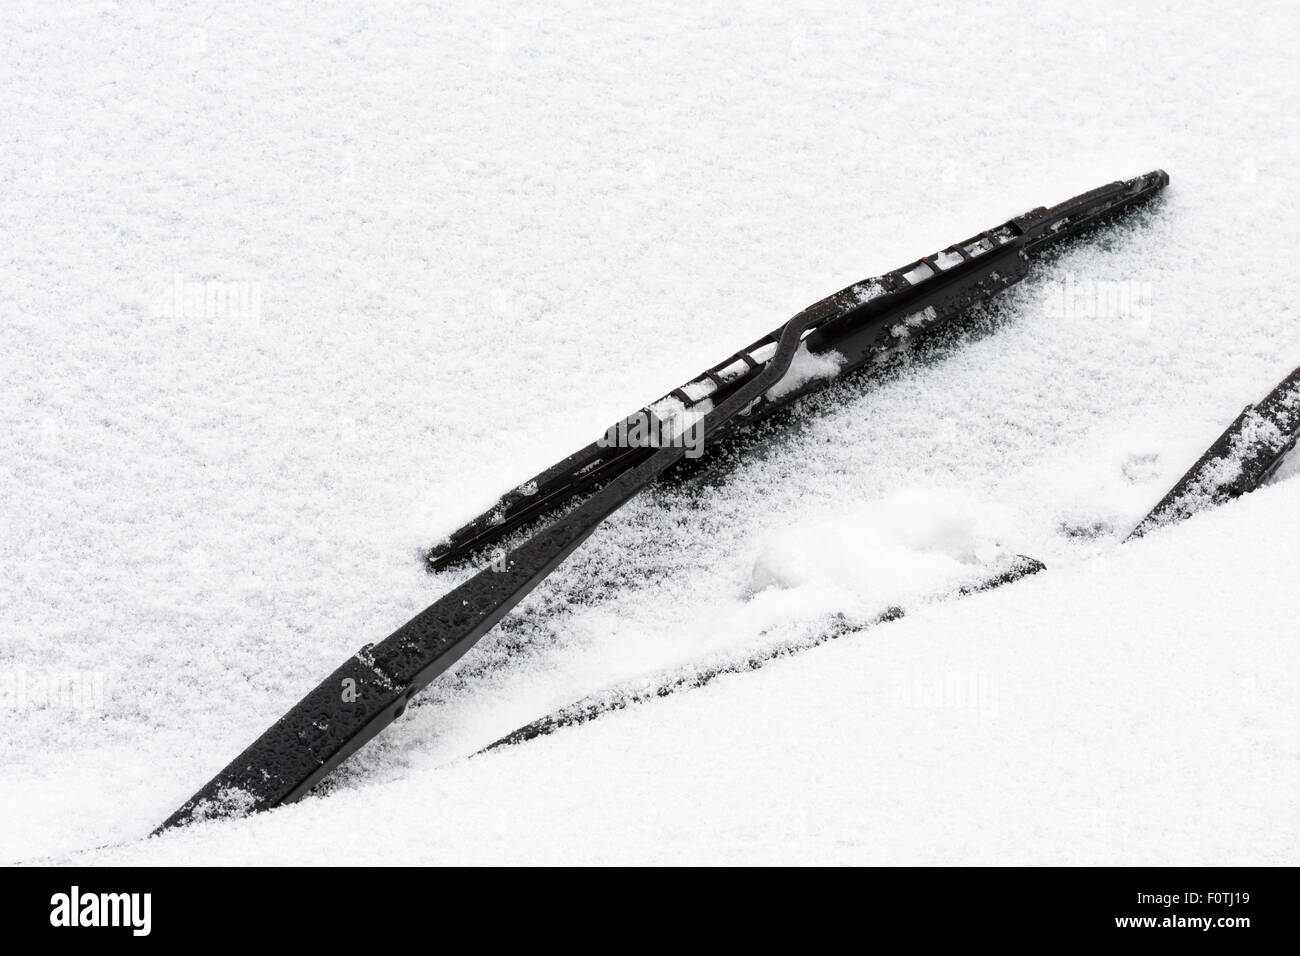 Détail de l'avant pare-brise de voiture couverte de neige Banque D'Images